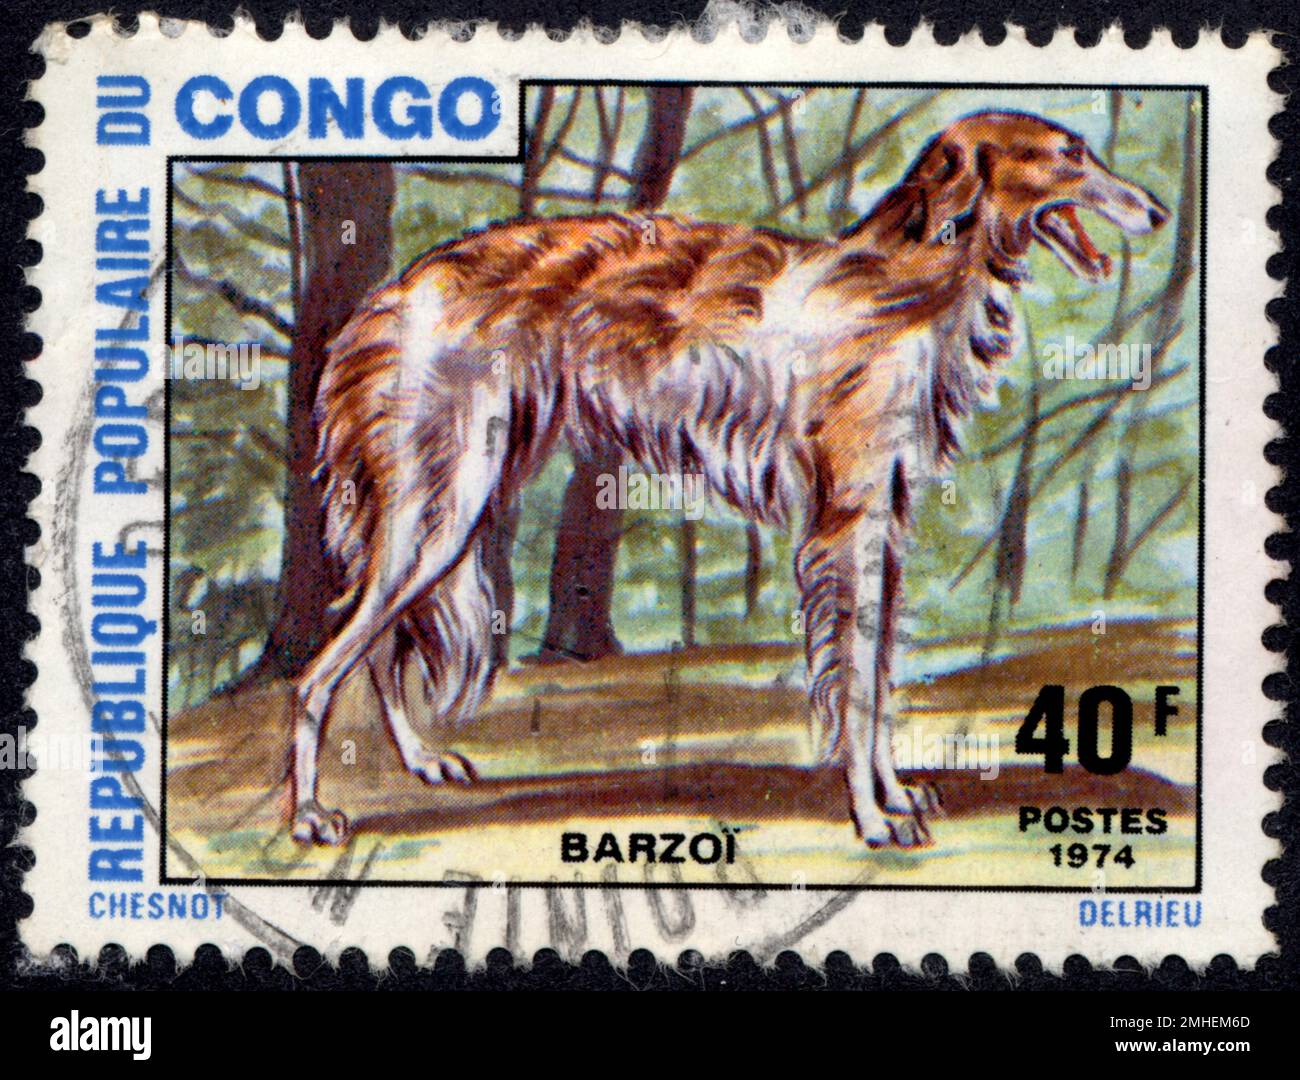 TIMBRE OBLITÉRÉ BARZOI. RÉPUBLIQUE POPULAIRE DU CONGO. 40 F. MESSAGGI. 1974 Foto Stock